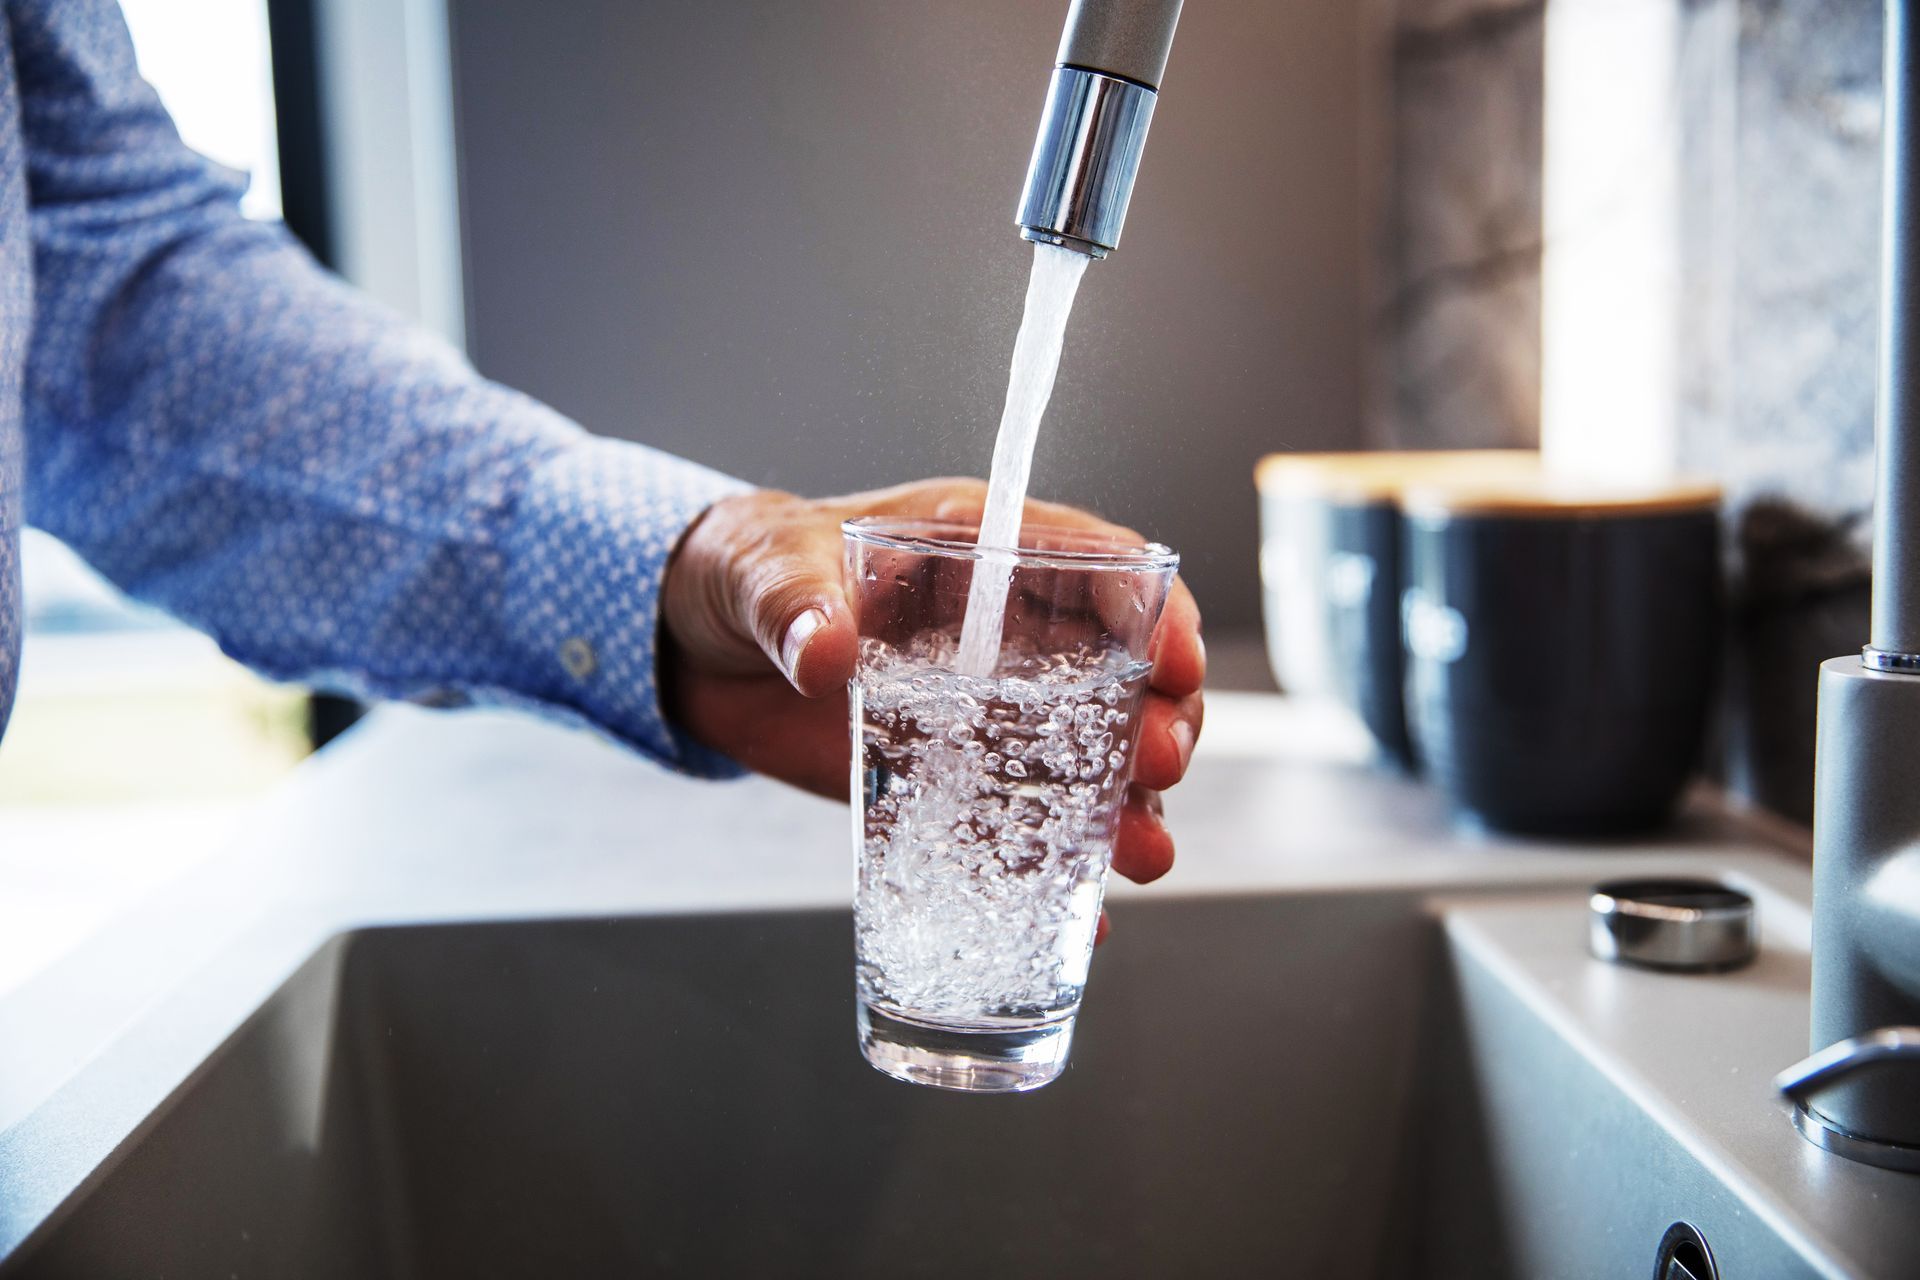 Descubre la solución económica y efectiva para beber agua pura en